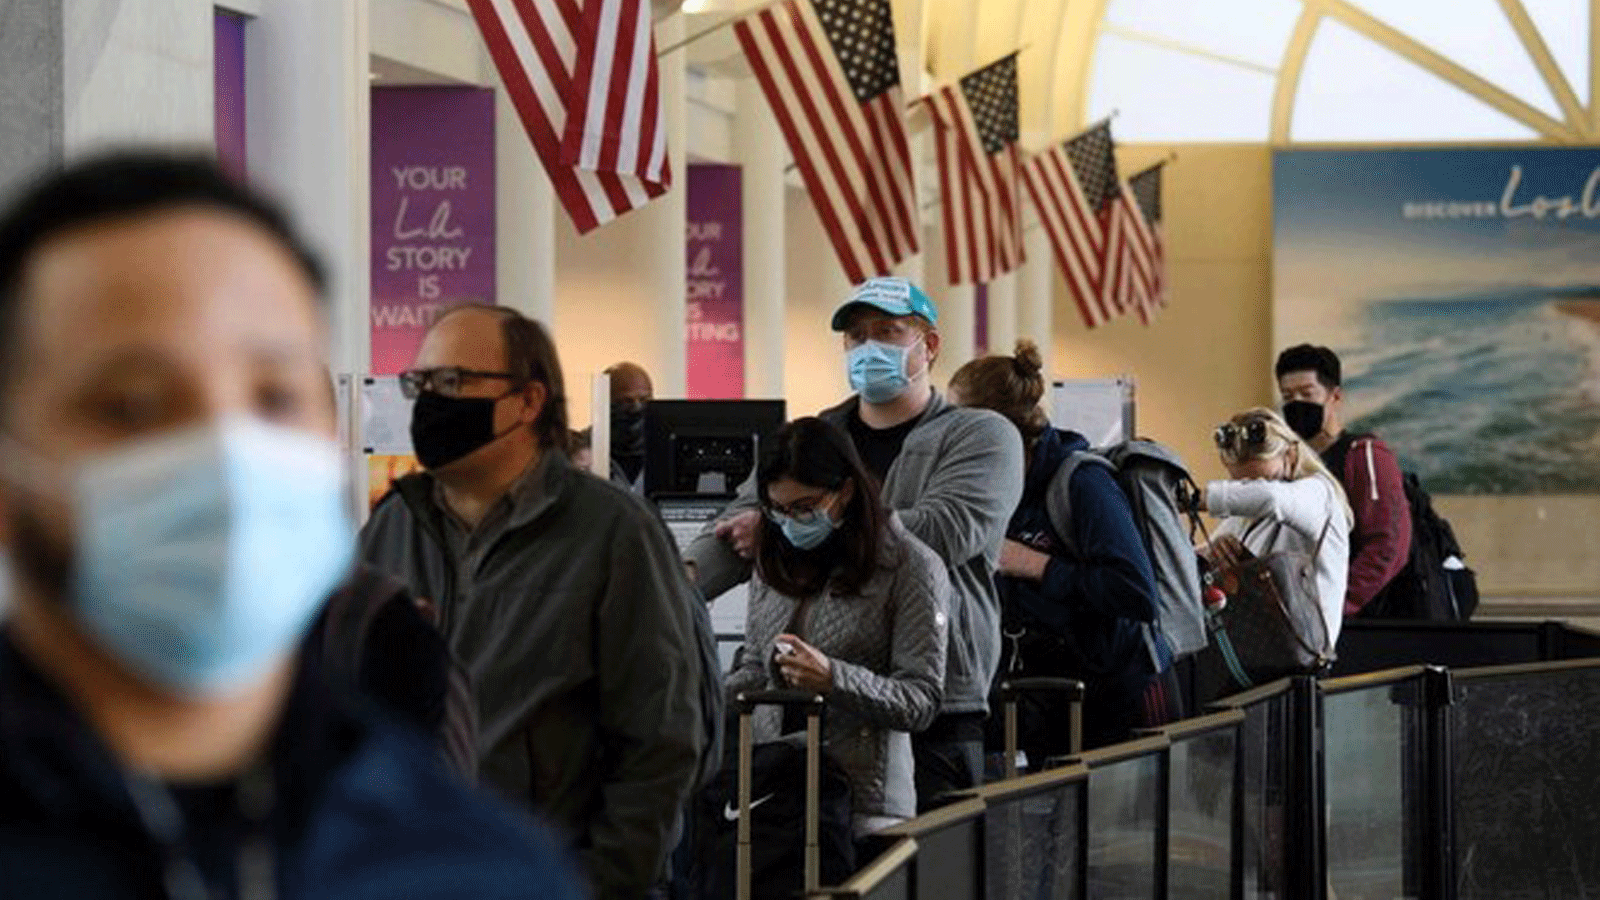  ركاب ينتظرون في طابور لدخول نقطة تفتيش تابعة لإدارة أمن النقل في مطار لوس أنجلوس الدولي قبل عطلة عيد الشكر في لوس أنجلوس، كاليفورنيا، 25 تشرين الثاني/ نوفمبر2020.